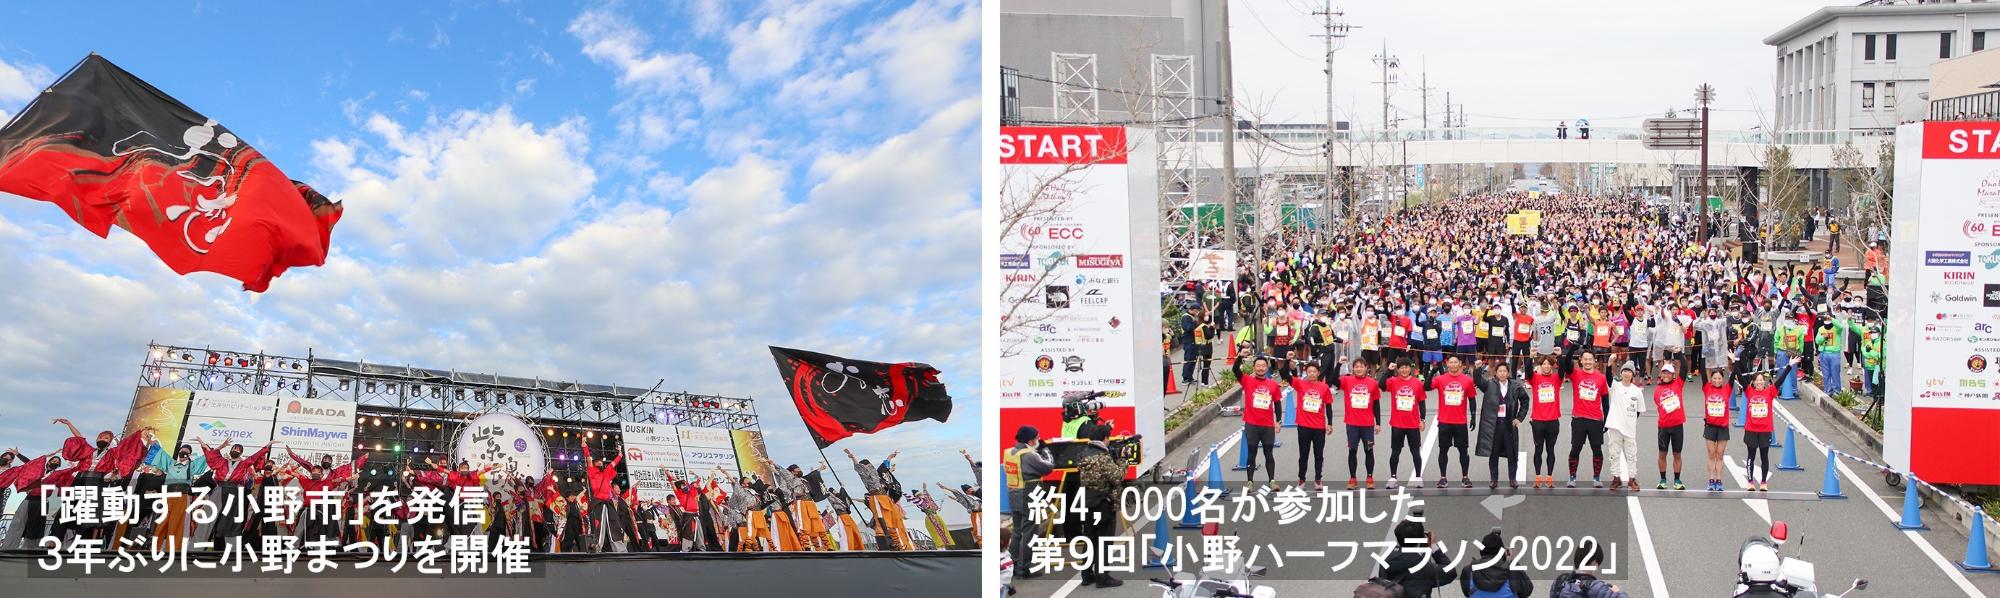 小野まつりと小野ハーフマラソンの写真